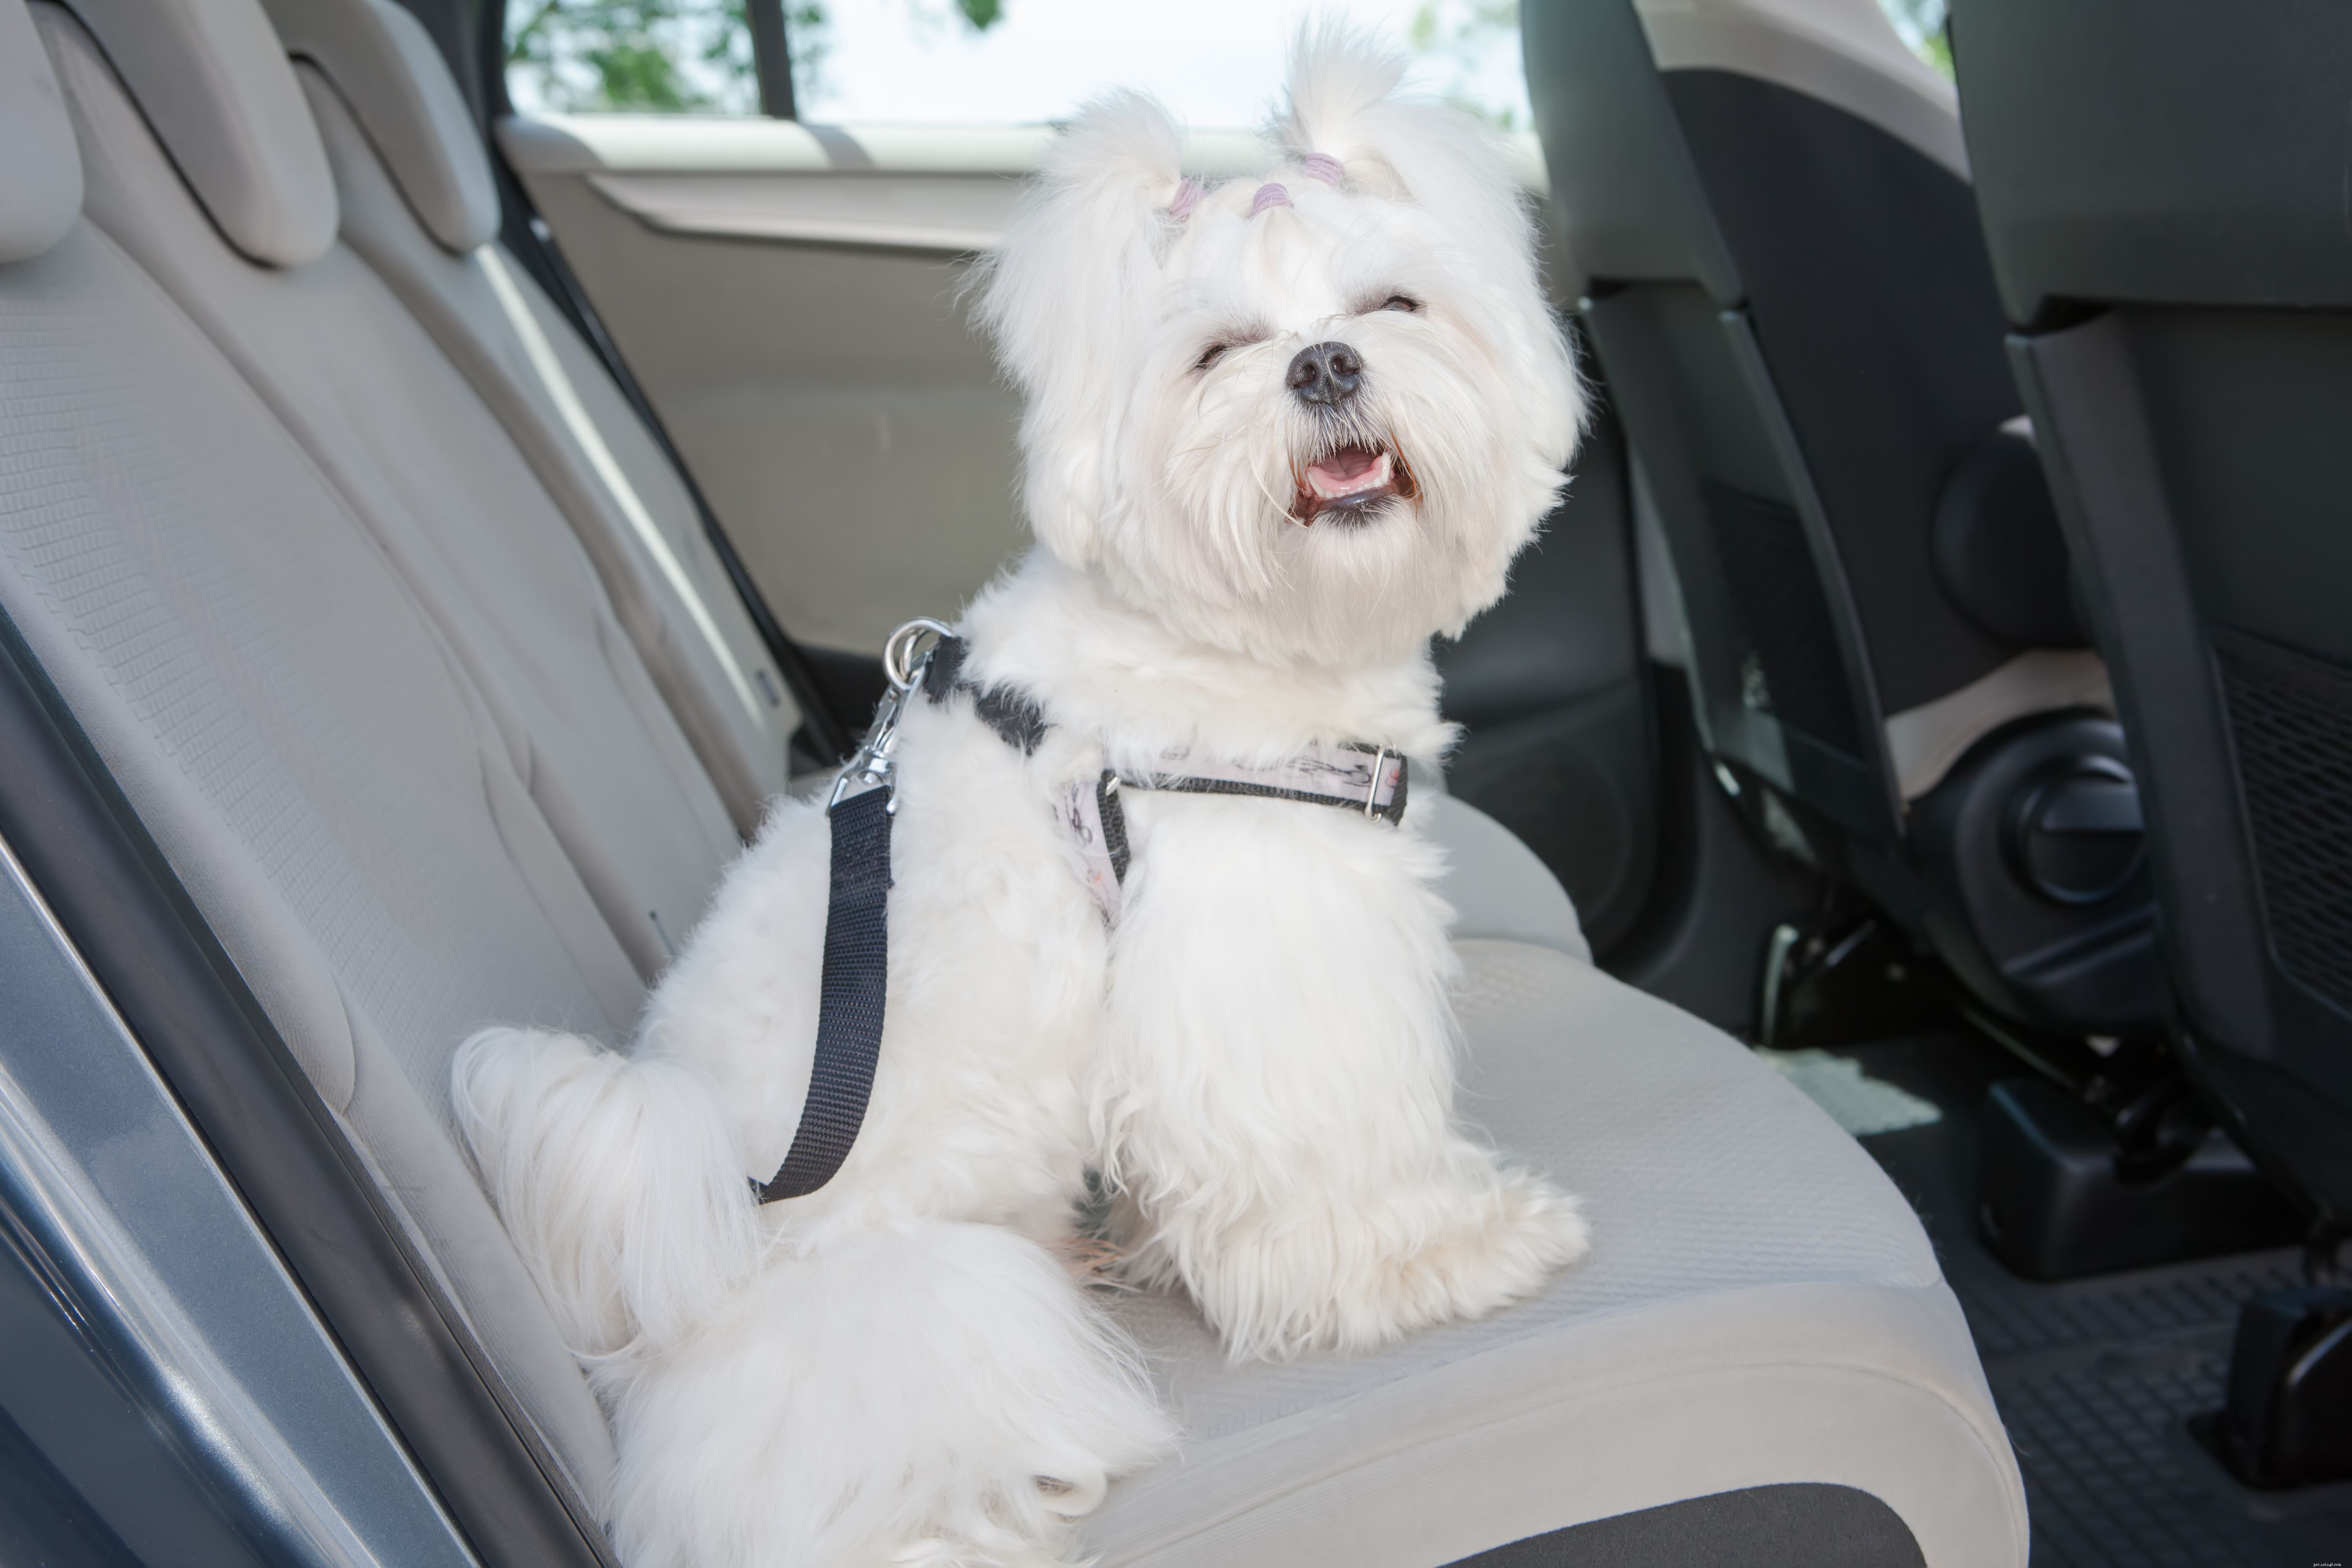 Meilleur moyen de retenir un chien dans votre voiture pour plus de sécurité